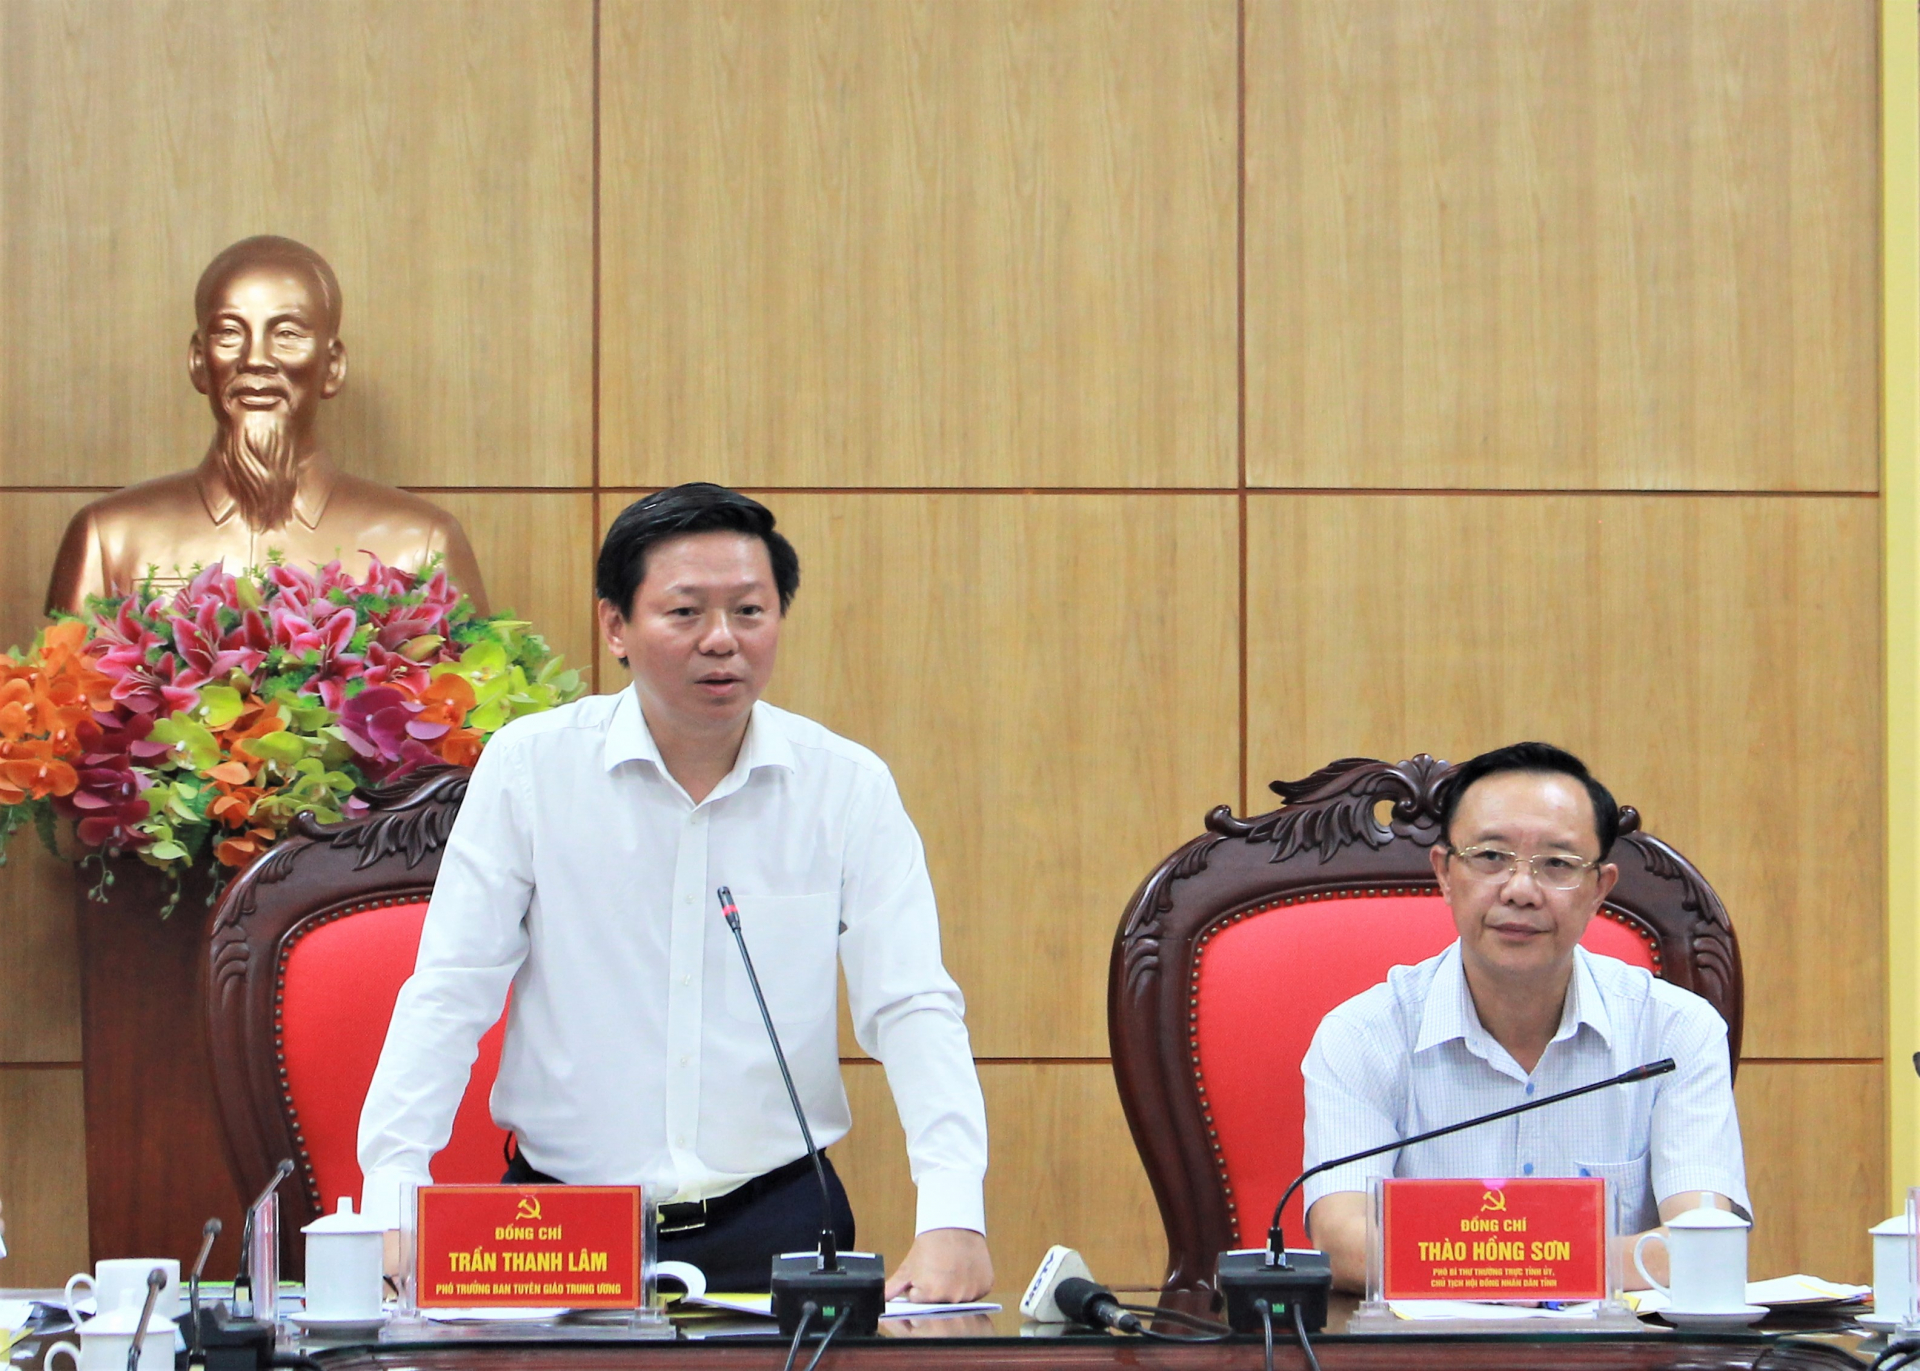 Đồng chí Trần Thanh Lâm, Phó Trưởng Ban Tuyên giáo T.Ư kết luận buổi làm việc.